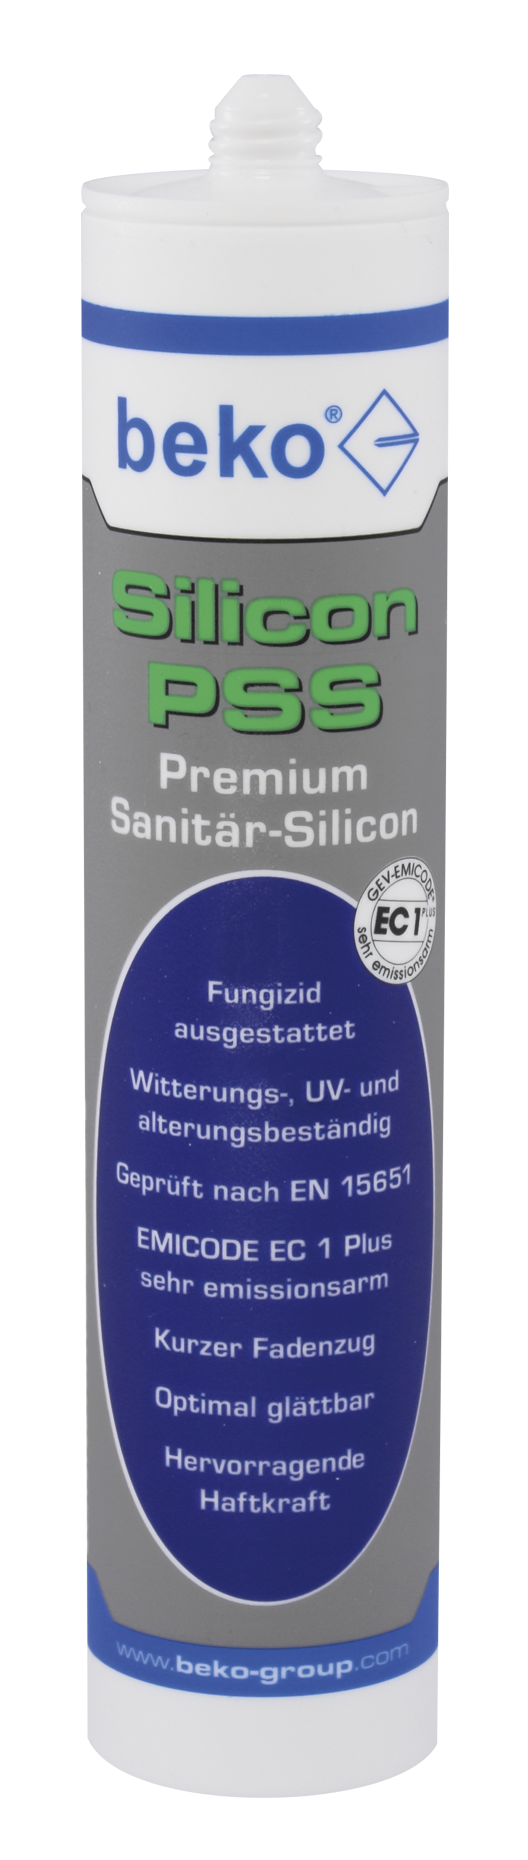 Beko Silicon PSS 310 ml Premium-Sanitär-Silicon transparent